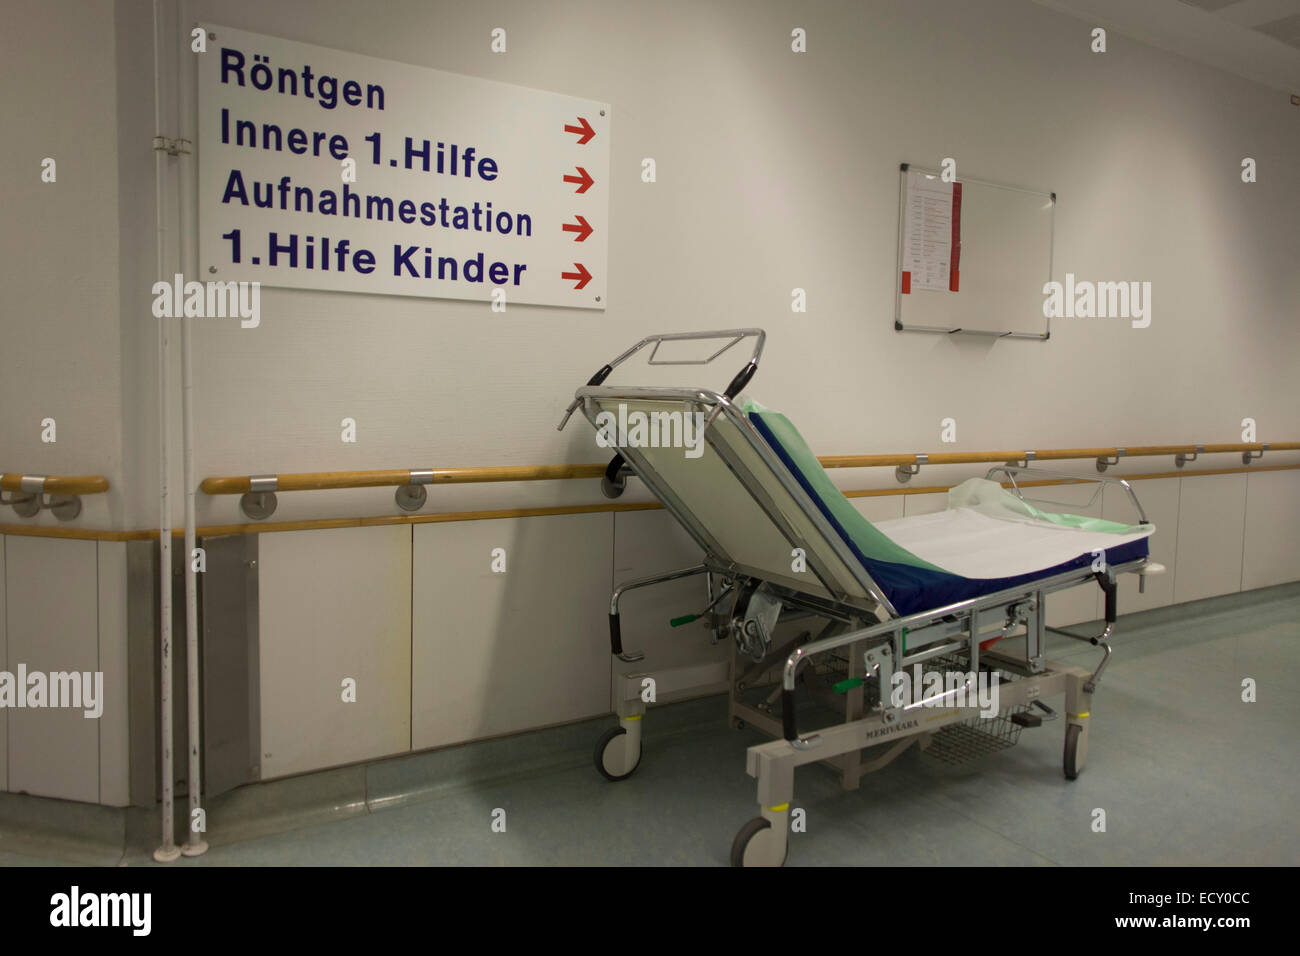 Corredor, Deutsches Rotes Kreuz (DRK -) Hospital de la Cruz Roja Alemana, Berlín, Alemania. Foto de stock